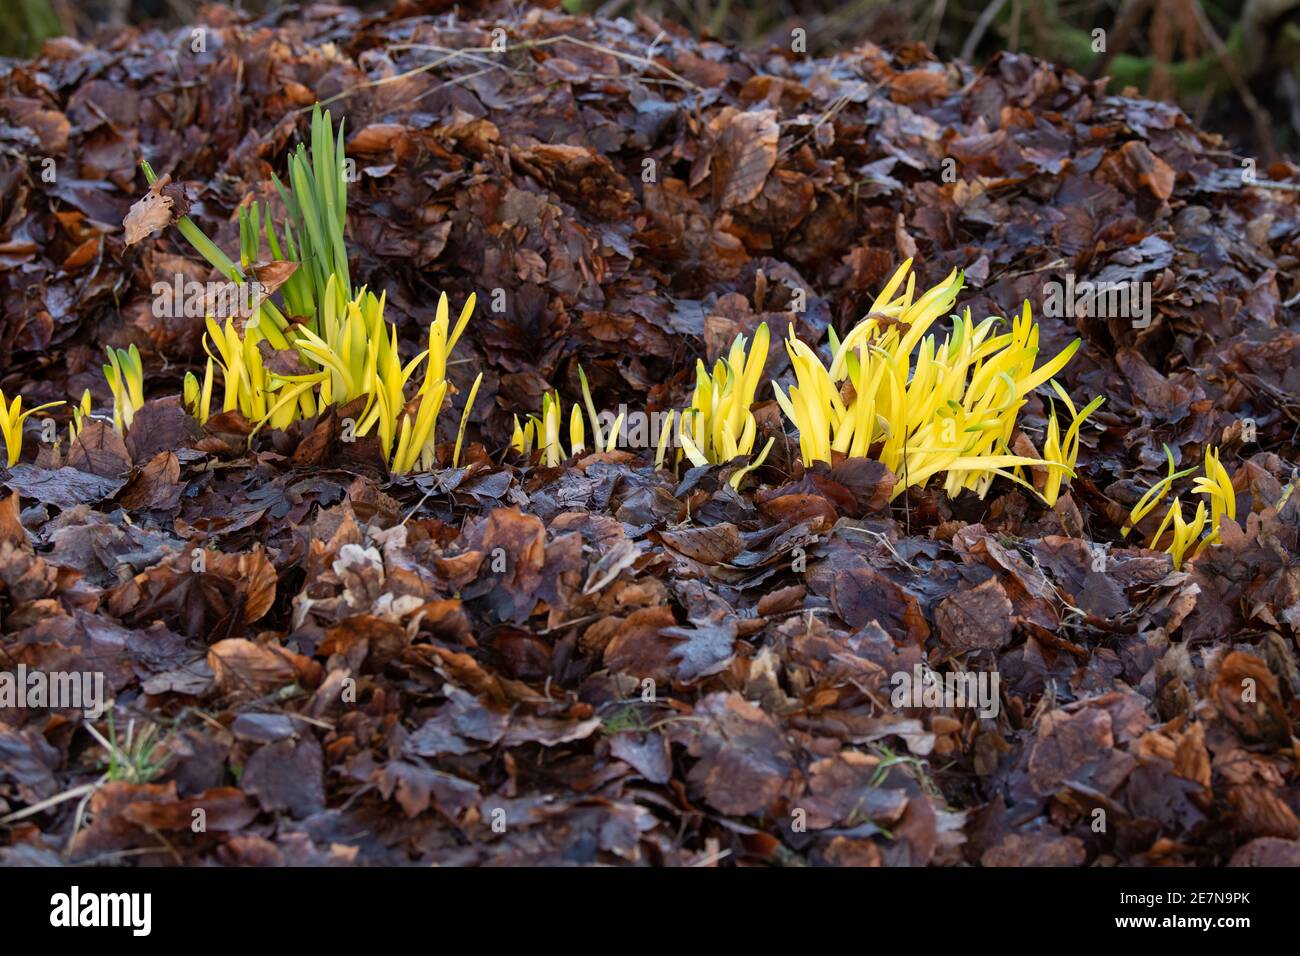 Chlorose (Vergilbung) von Narzissen, die mit tiefem Blattstreu bedeckt wurden, während sie wachsen und ihnen das Sonnenlicht entziehen - Schottland, Großbritannien Stockfoto